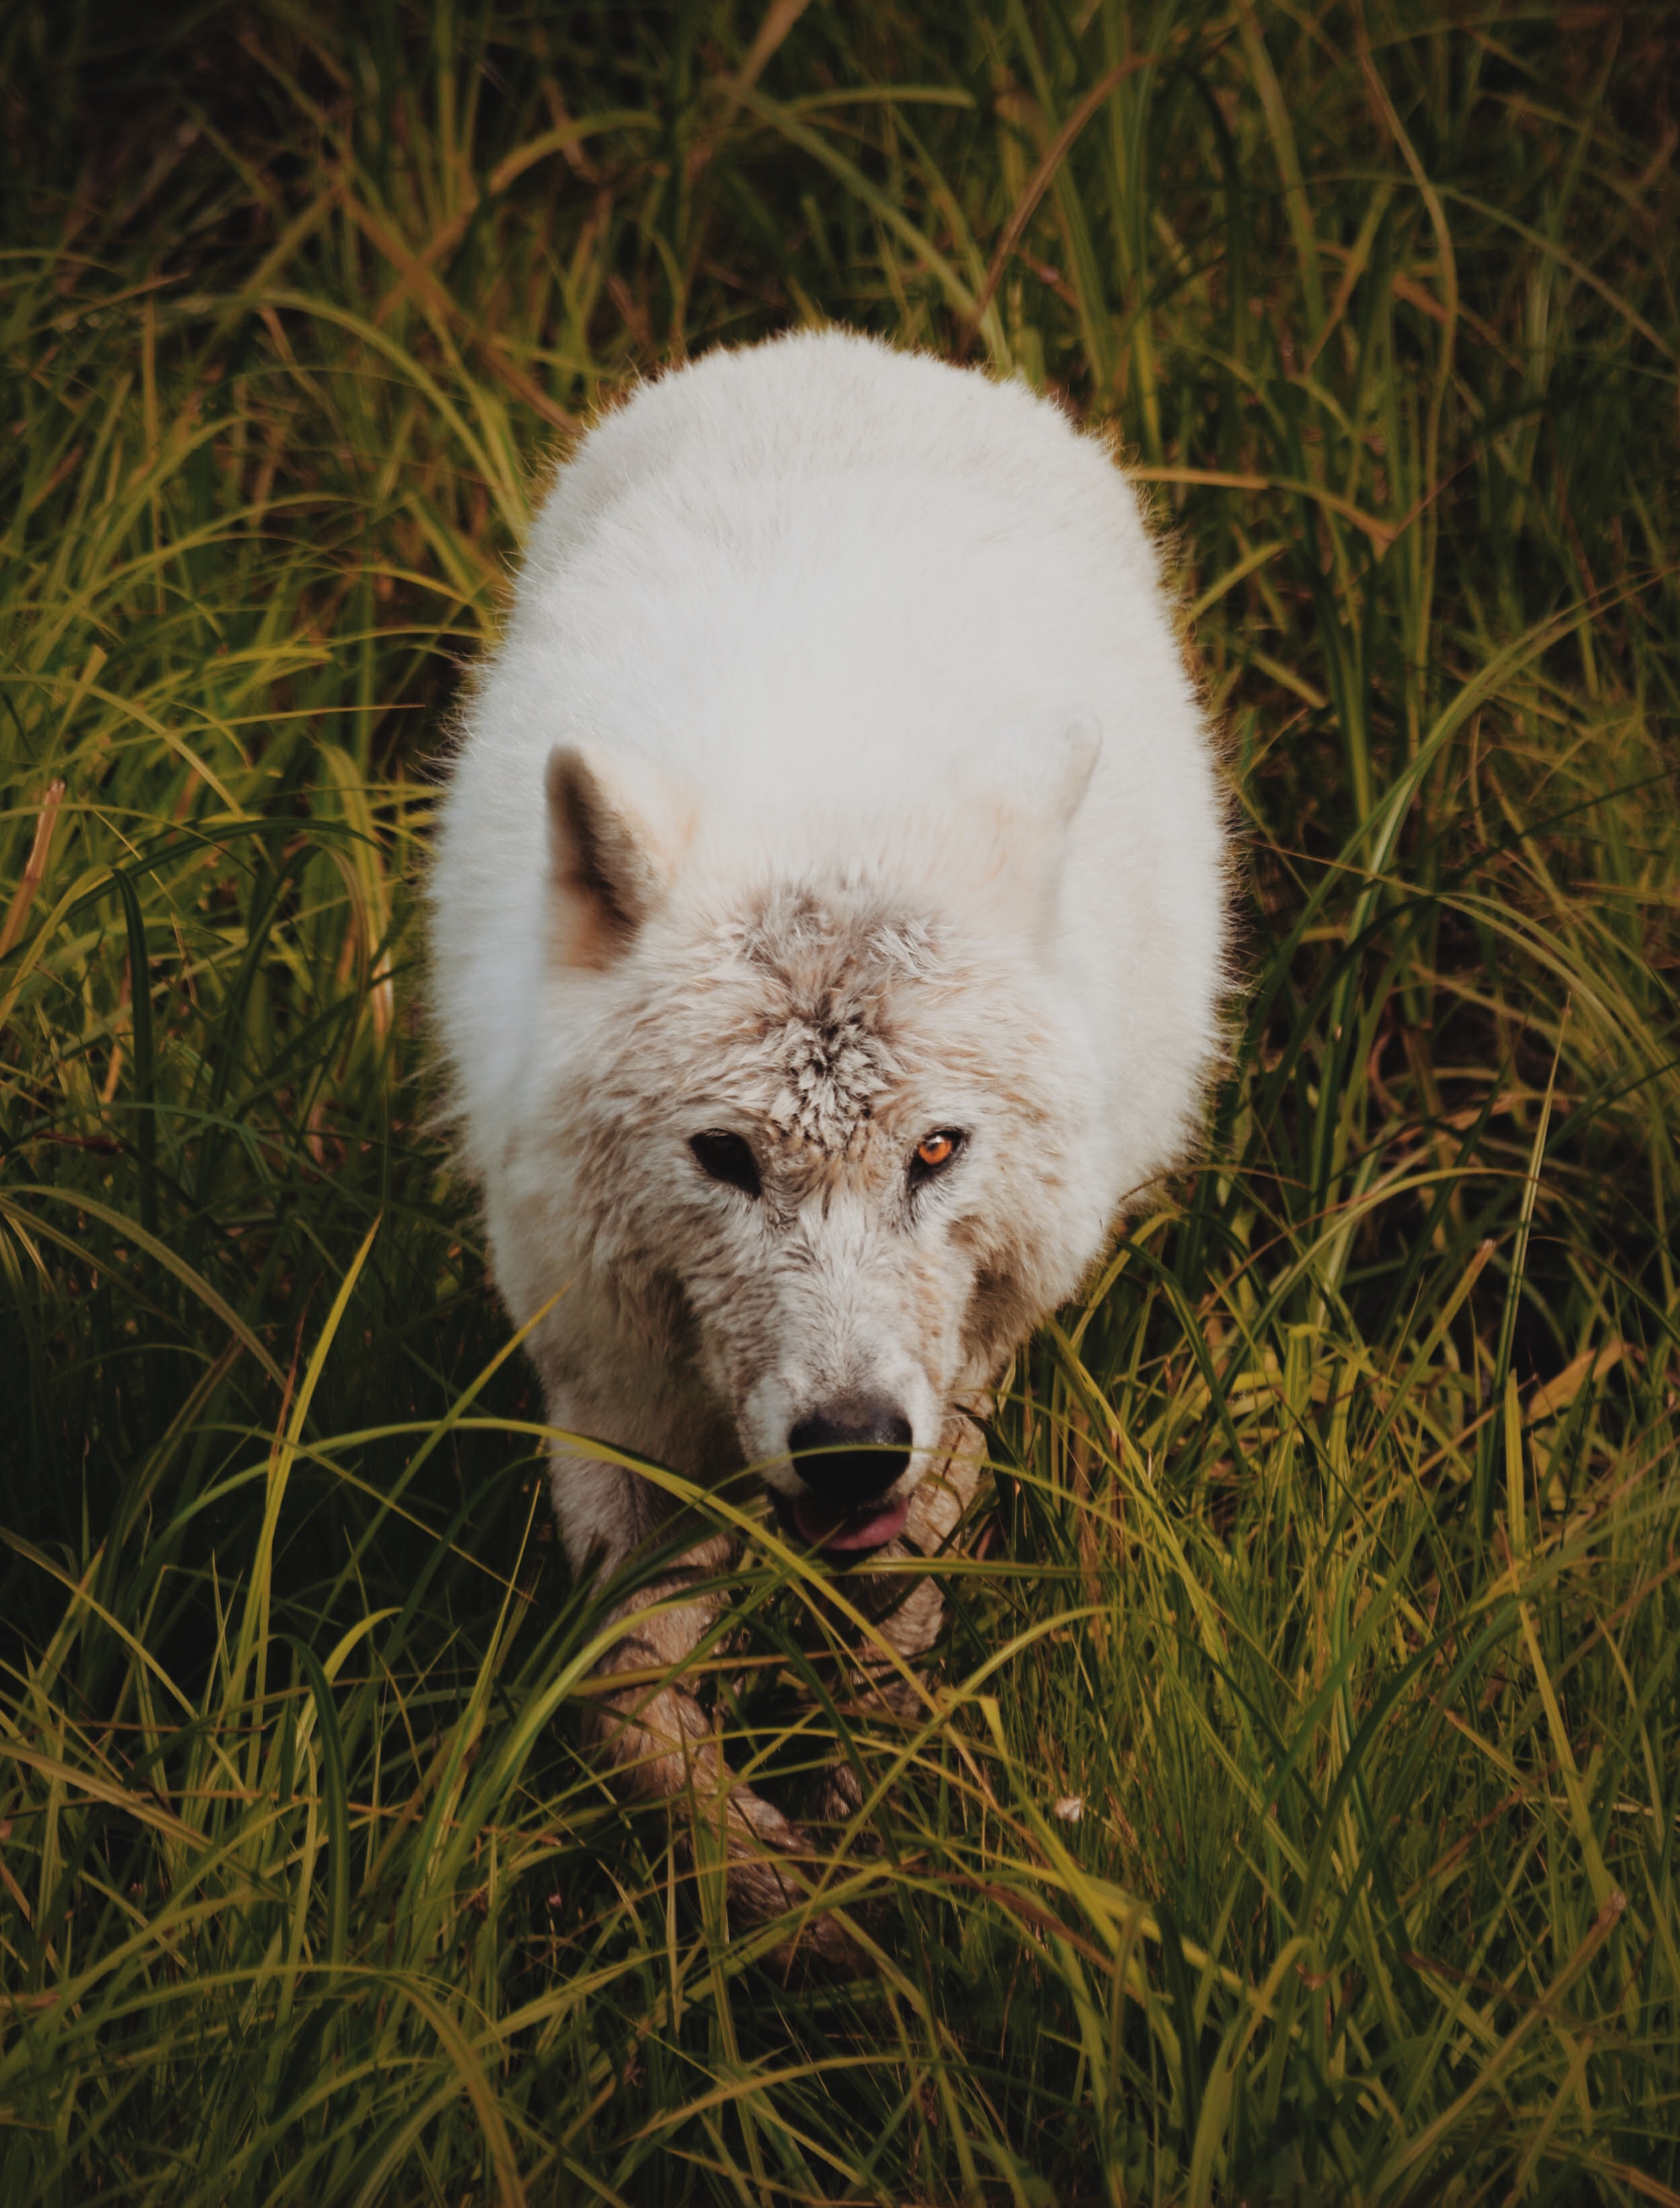 An arctic wolf prowling through tall grass.